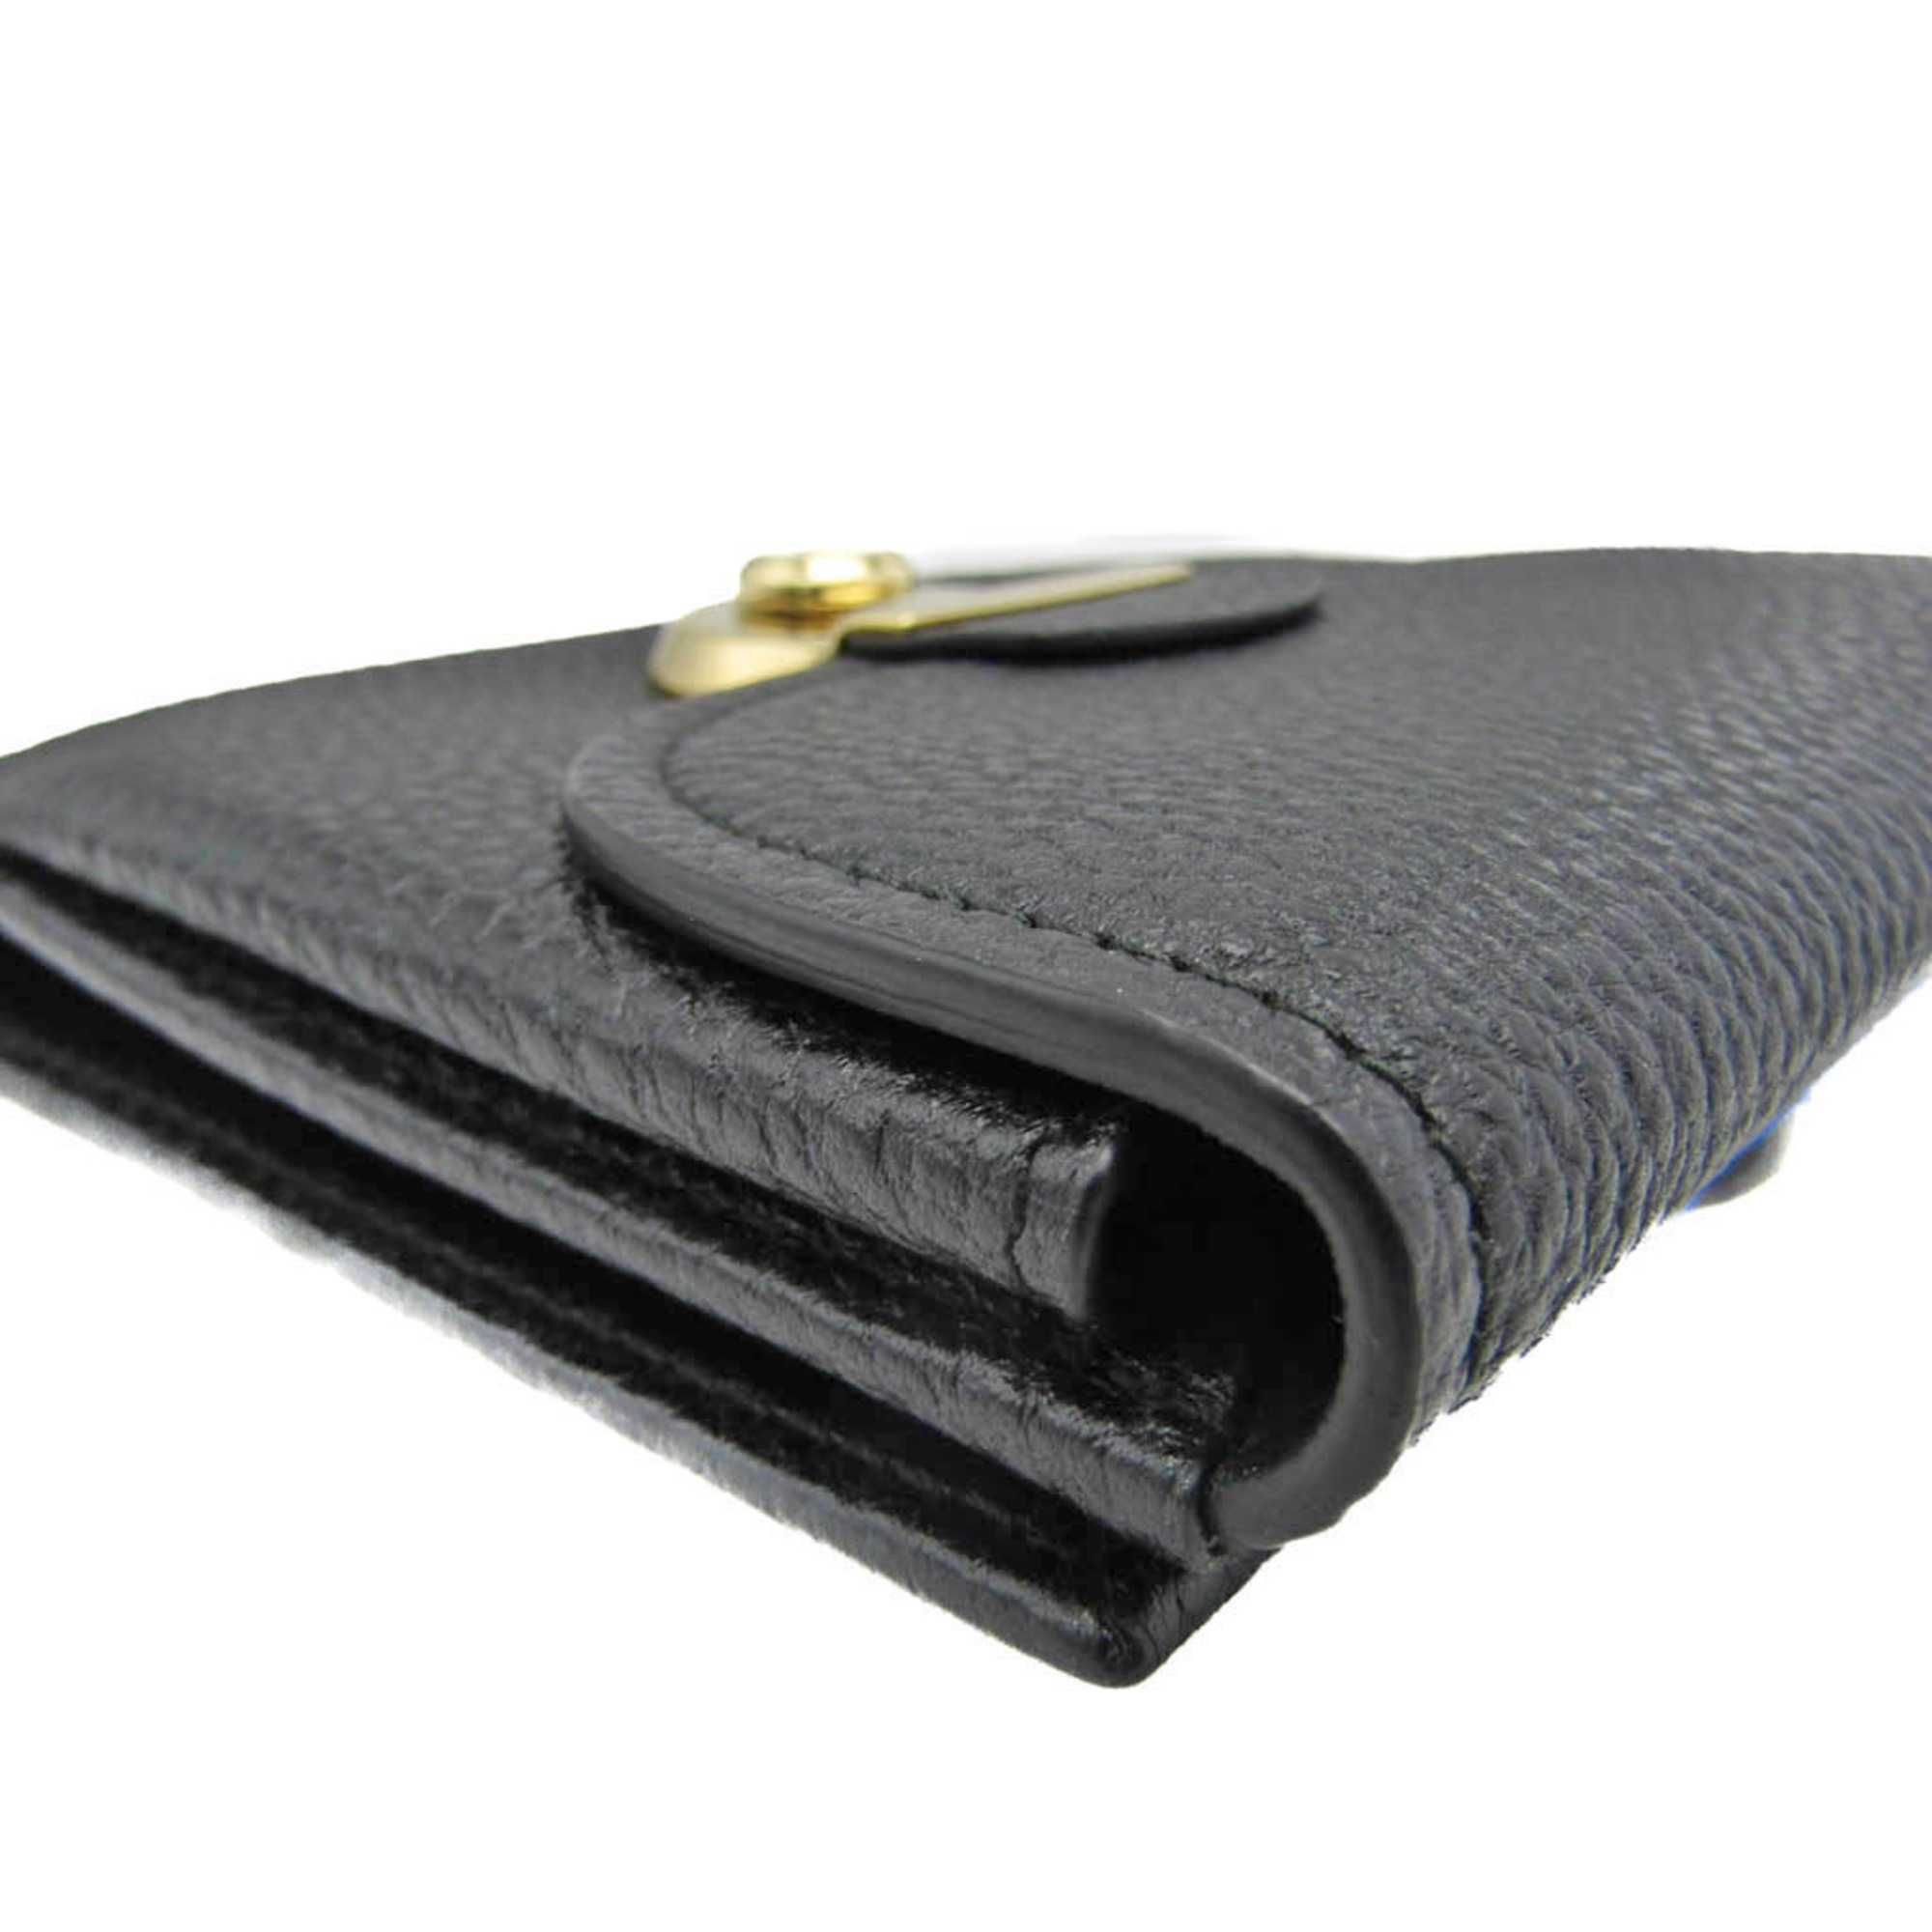 Salvatore Ferragamo Leather Wallet (tri-fold) Black